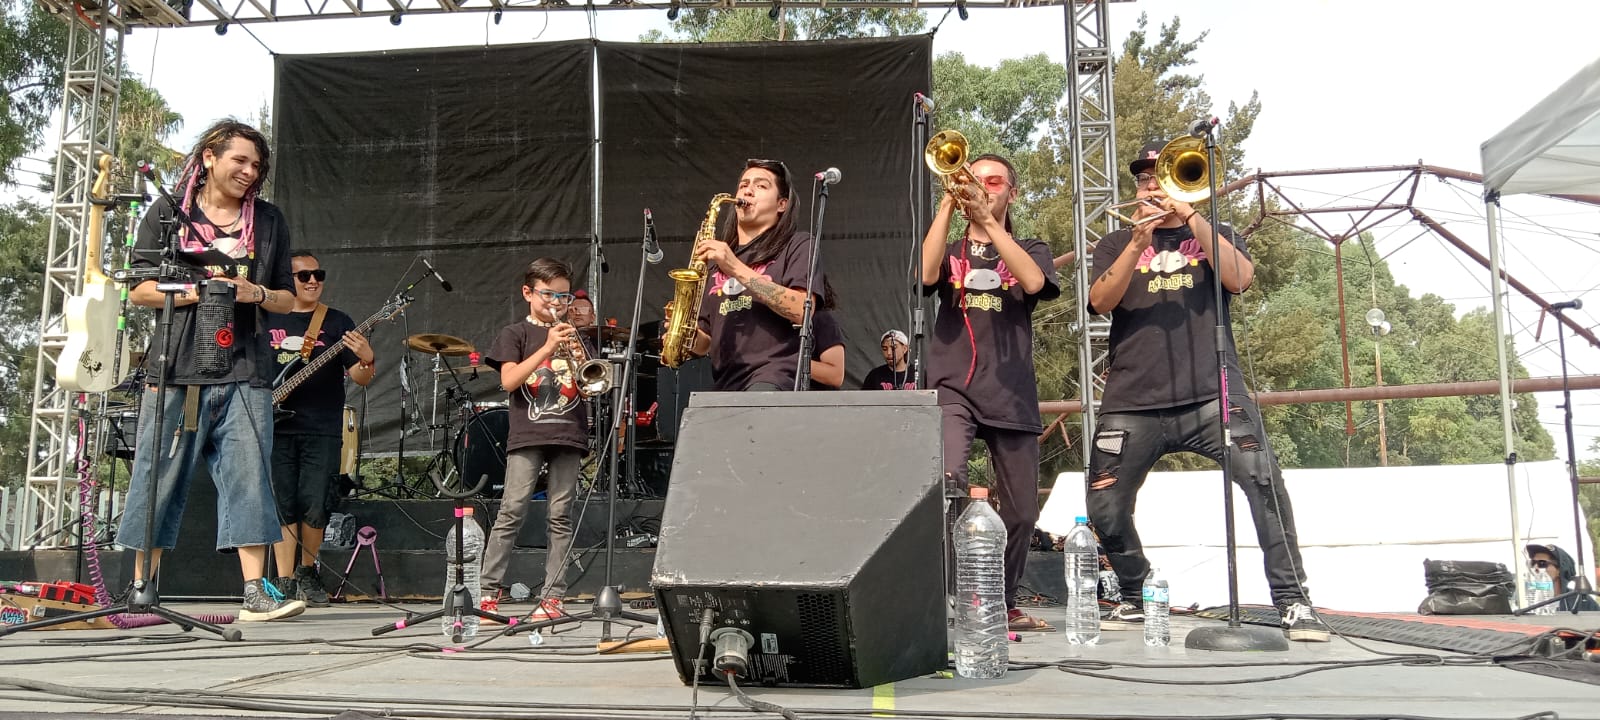 Foto: Moisés Franco | Anxolotes y el 'niño trompeto' en 18 los 18 años de La Faro Tláhuac